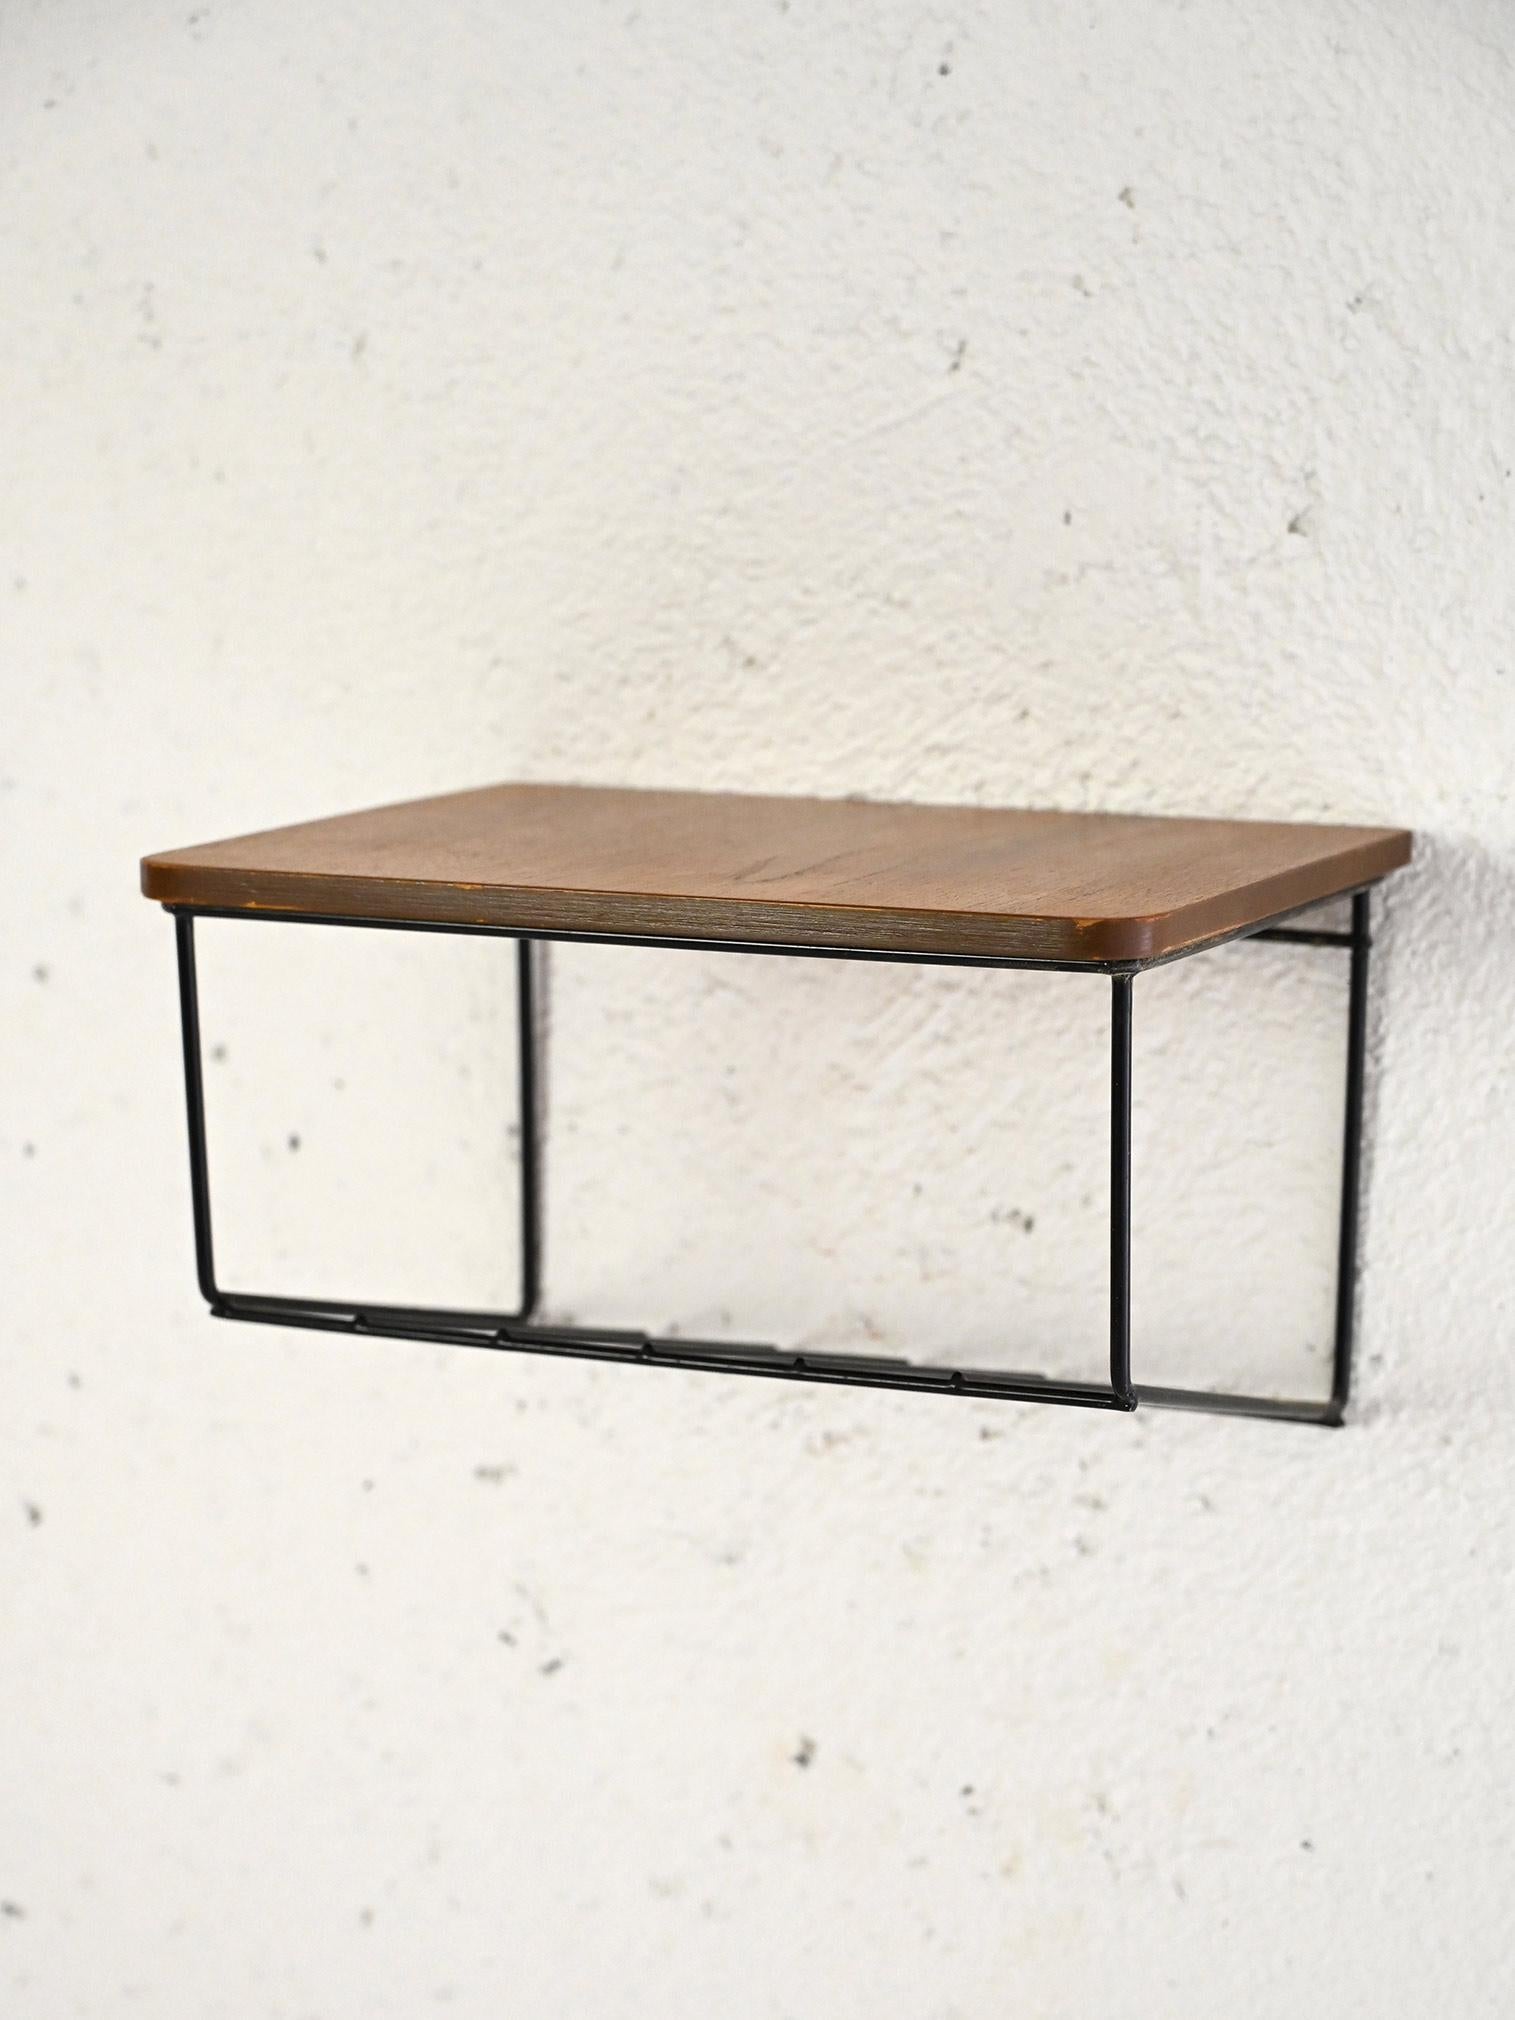 Originalregal aus skandinavischer Produktion aus den 1960er Jahren.

Ein einfaches und funktionelles Möbelstück im Industriestil, bestehend aus einem Gestell mit einer Metallablage und einer rechteckigen Arbeitsplatte aus Teakholz. 
Ideal als